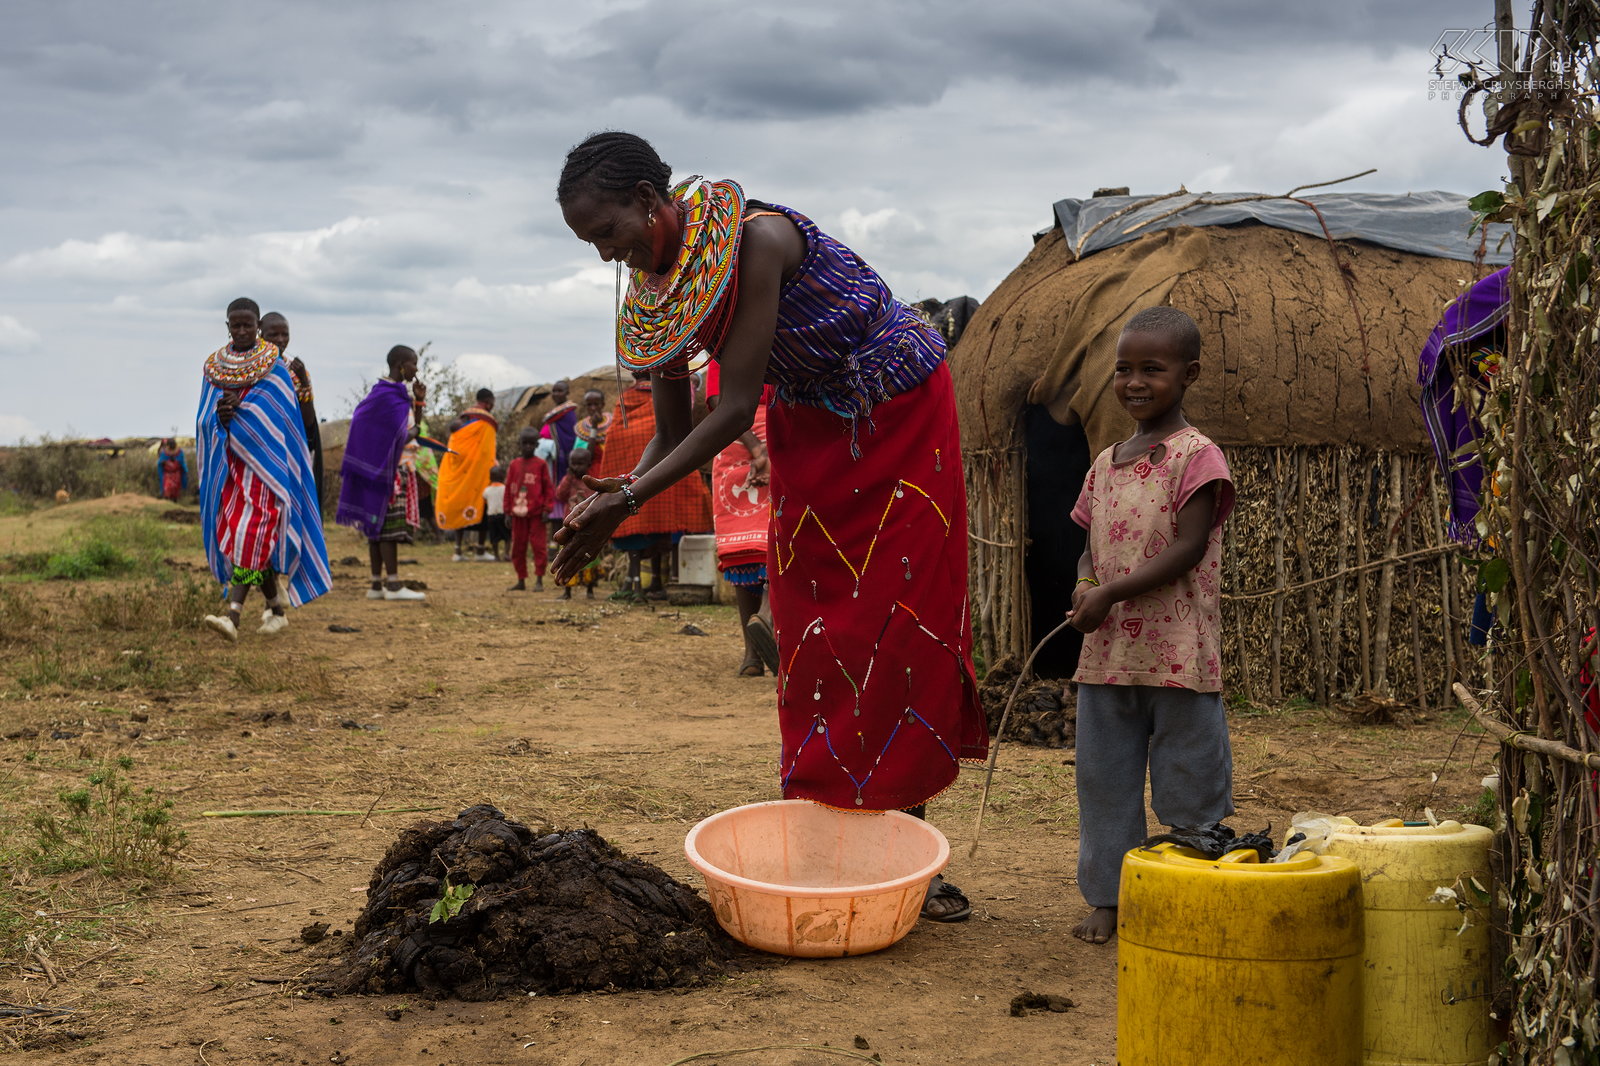 Kisima - Samburu lmuget - Lorora bouwen De Samburu bouwen een tijdelijk maar compleet nieuwe dorp genaamd lorora voor deze lmuget ceremonies. Dit is een taak voor de vrouwen. Huizen hebben slechts één kamer en worden gebouwd met stokken en bedekt met een mengeling van modder en mest. Stefan Cruysberghs